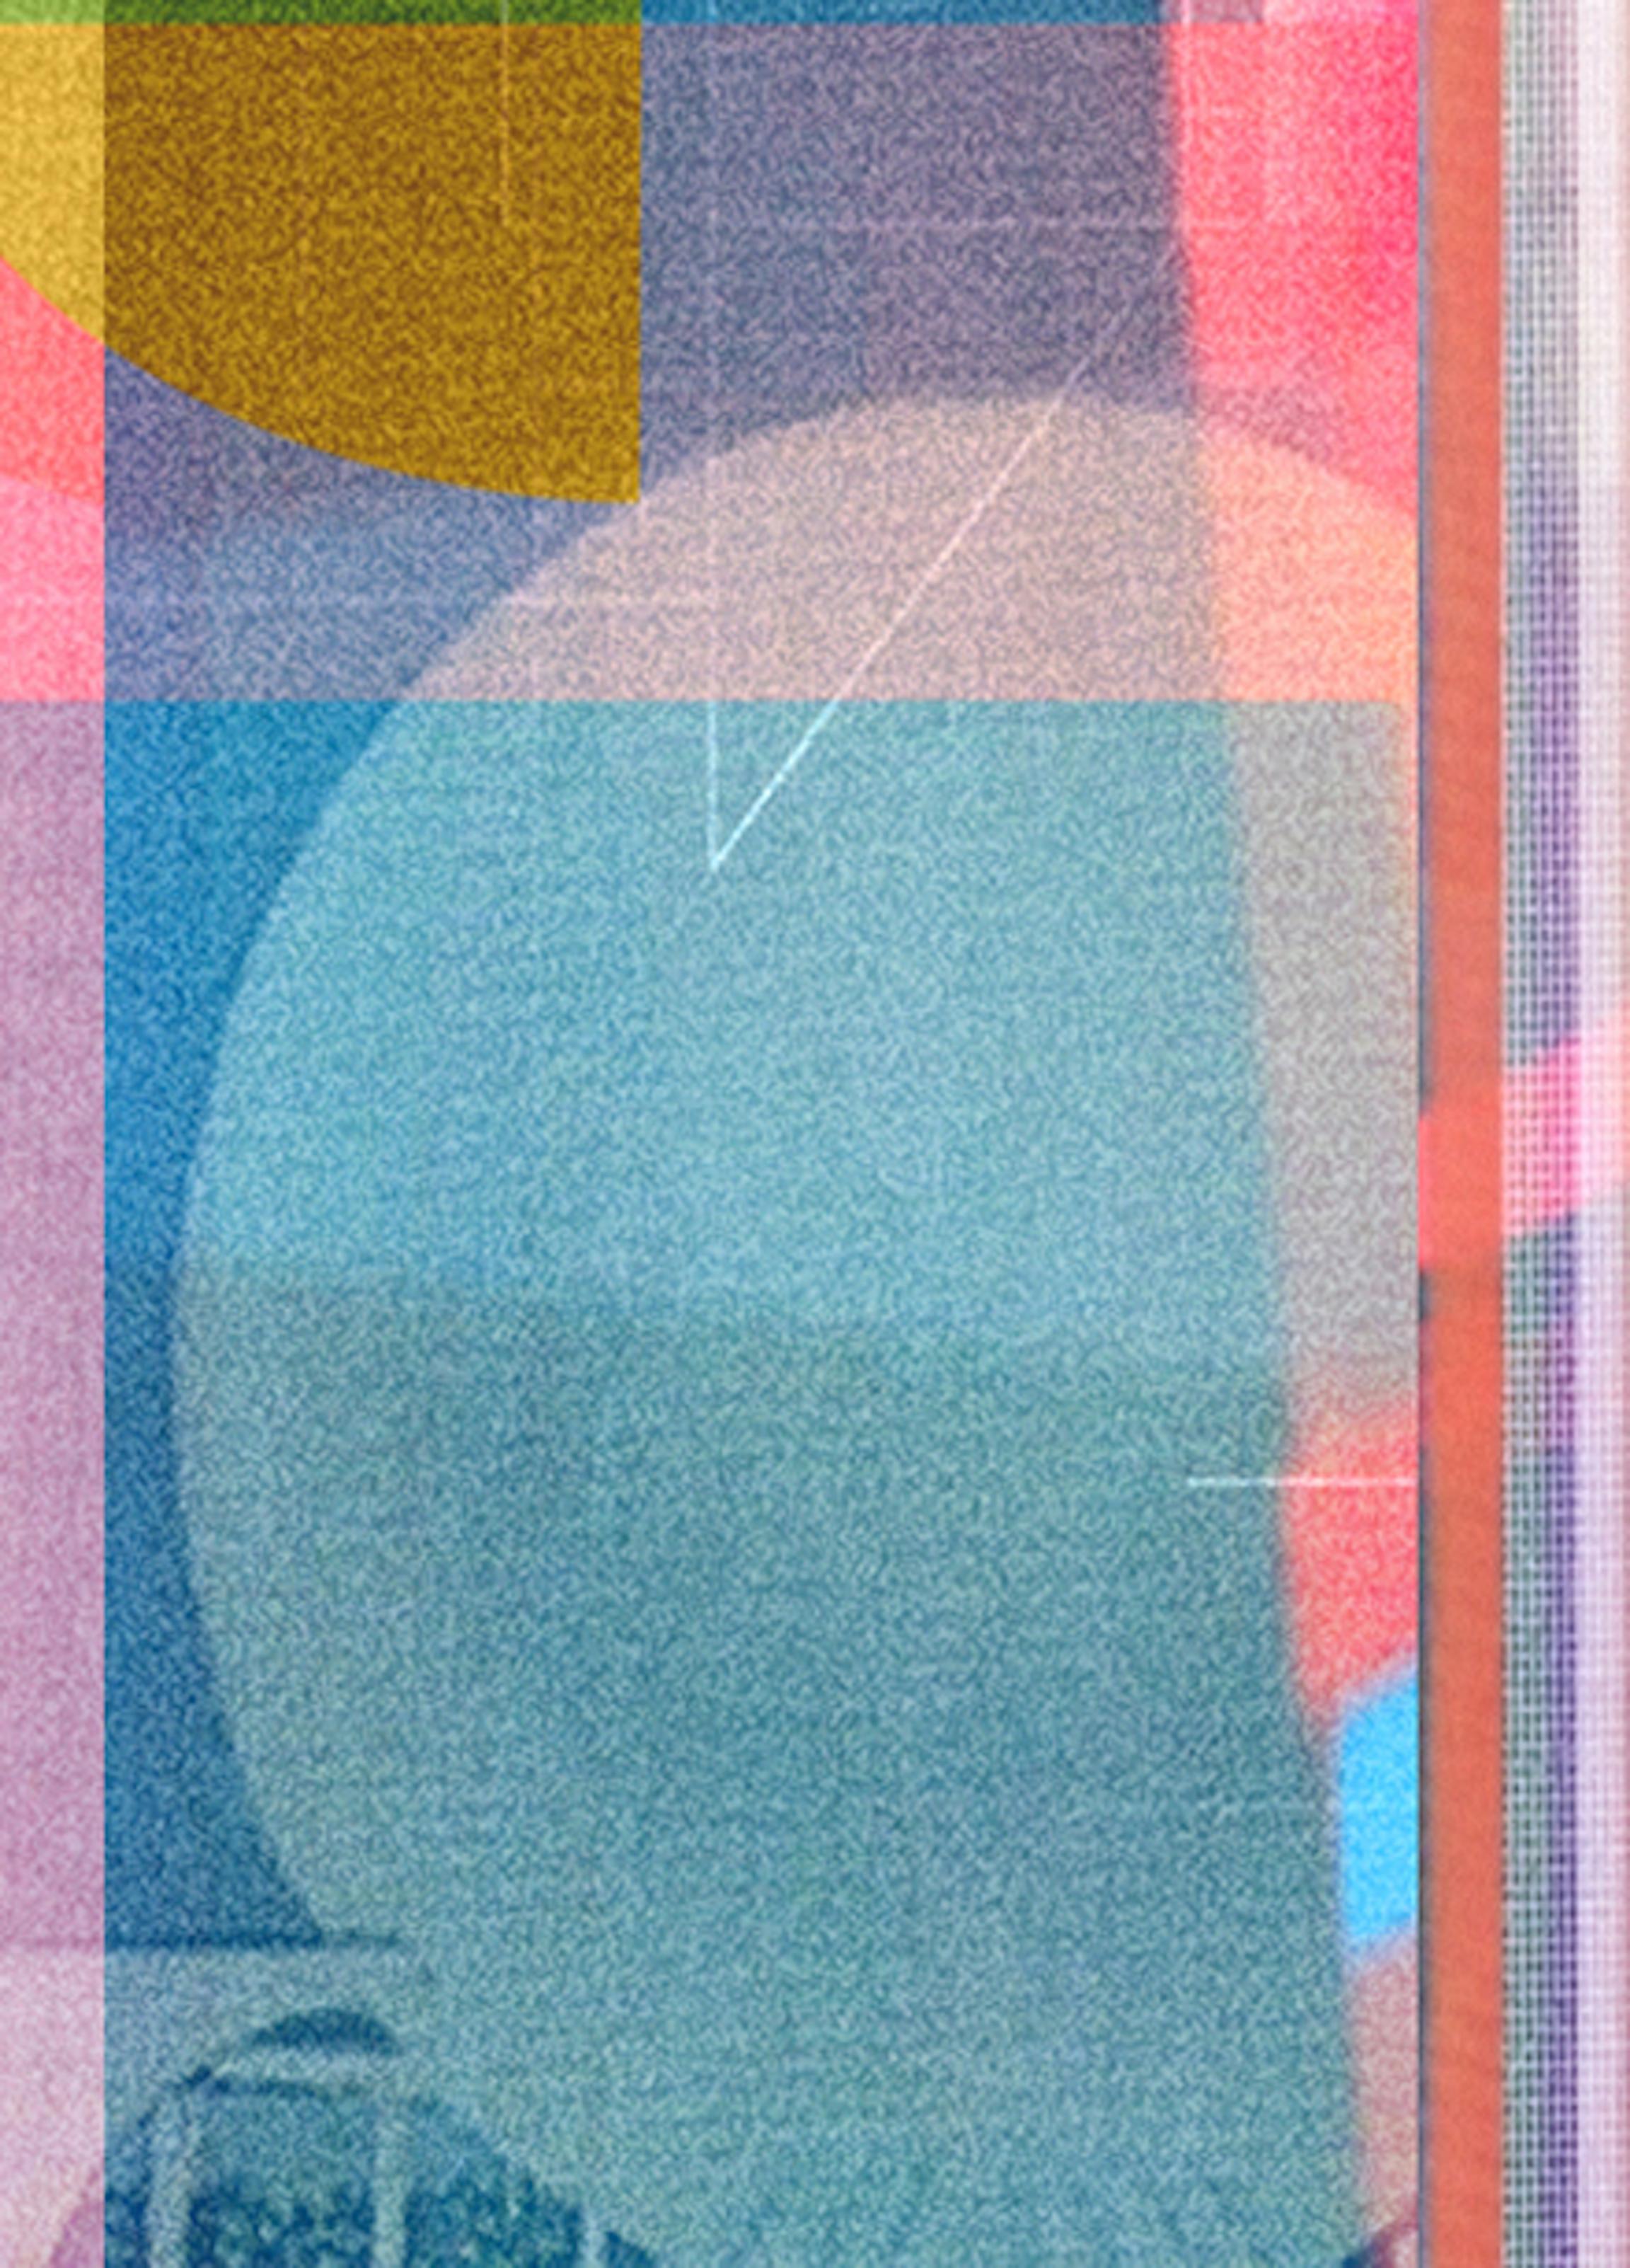 Zeitlos 03. Abstrakte Farbfotografie in limitierter Auflage – Photograph von Monika Bravo